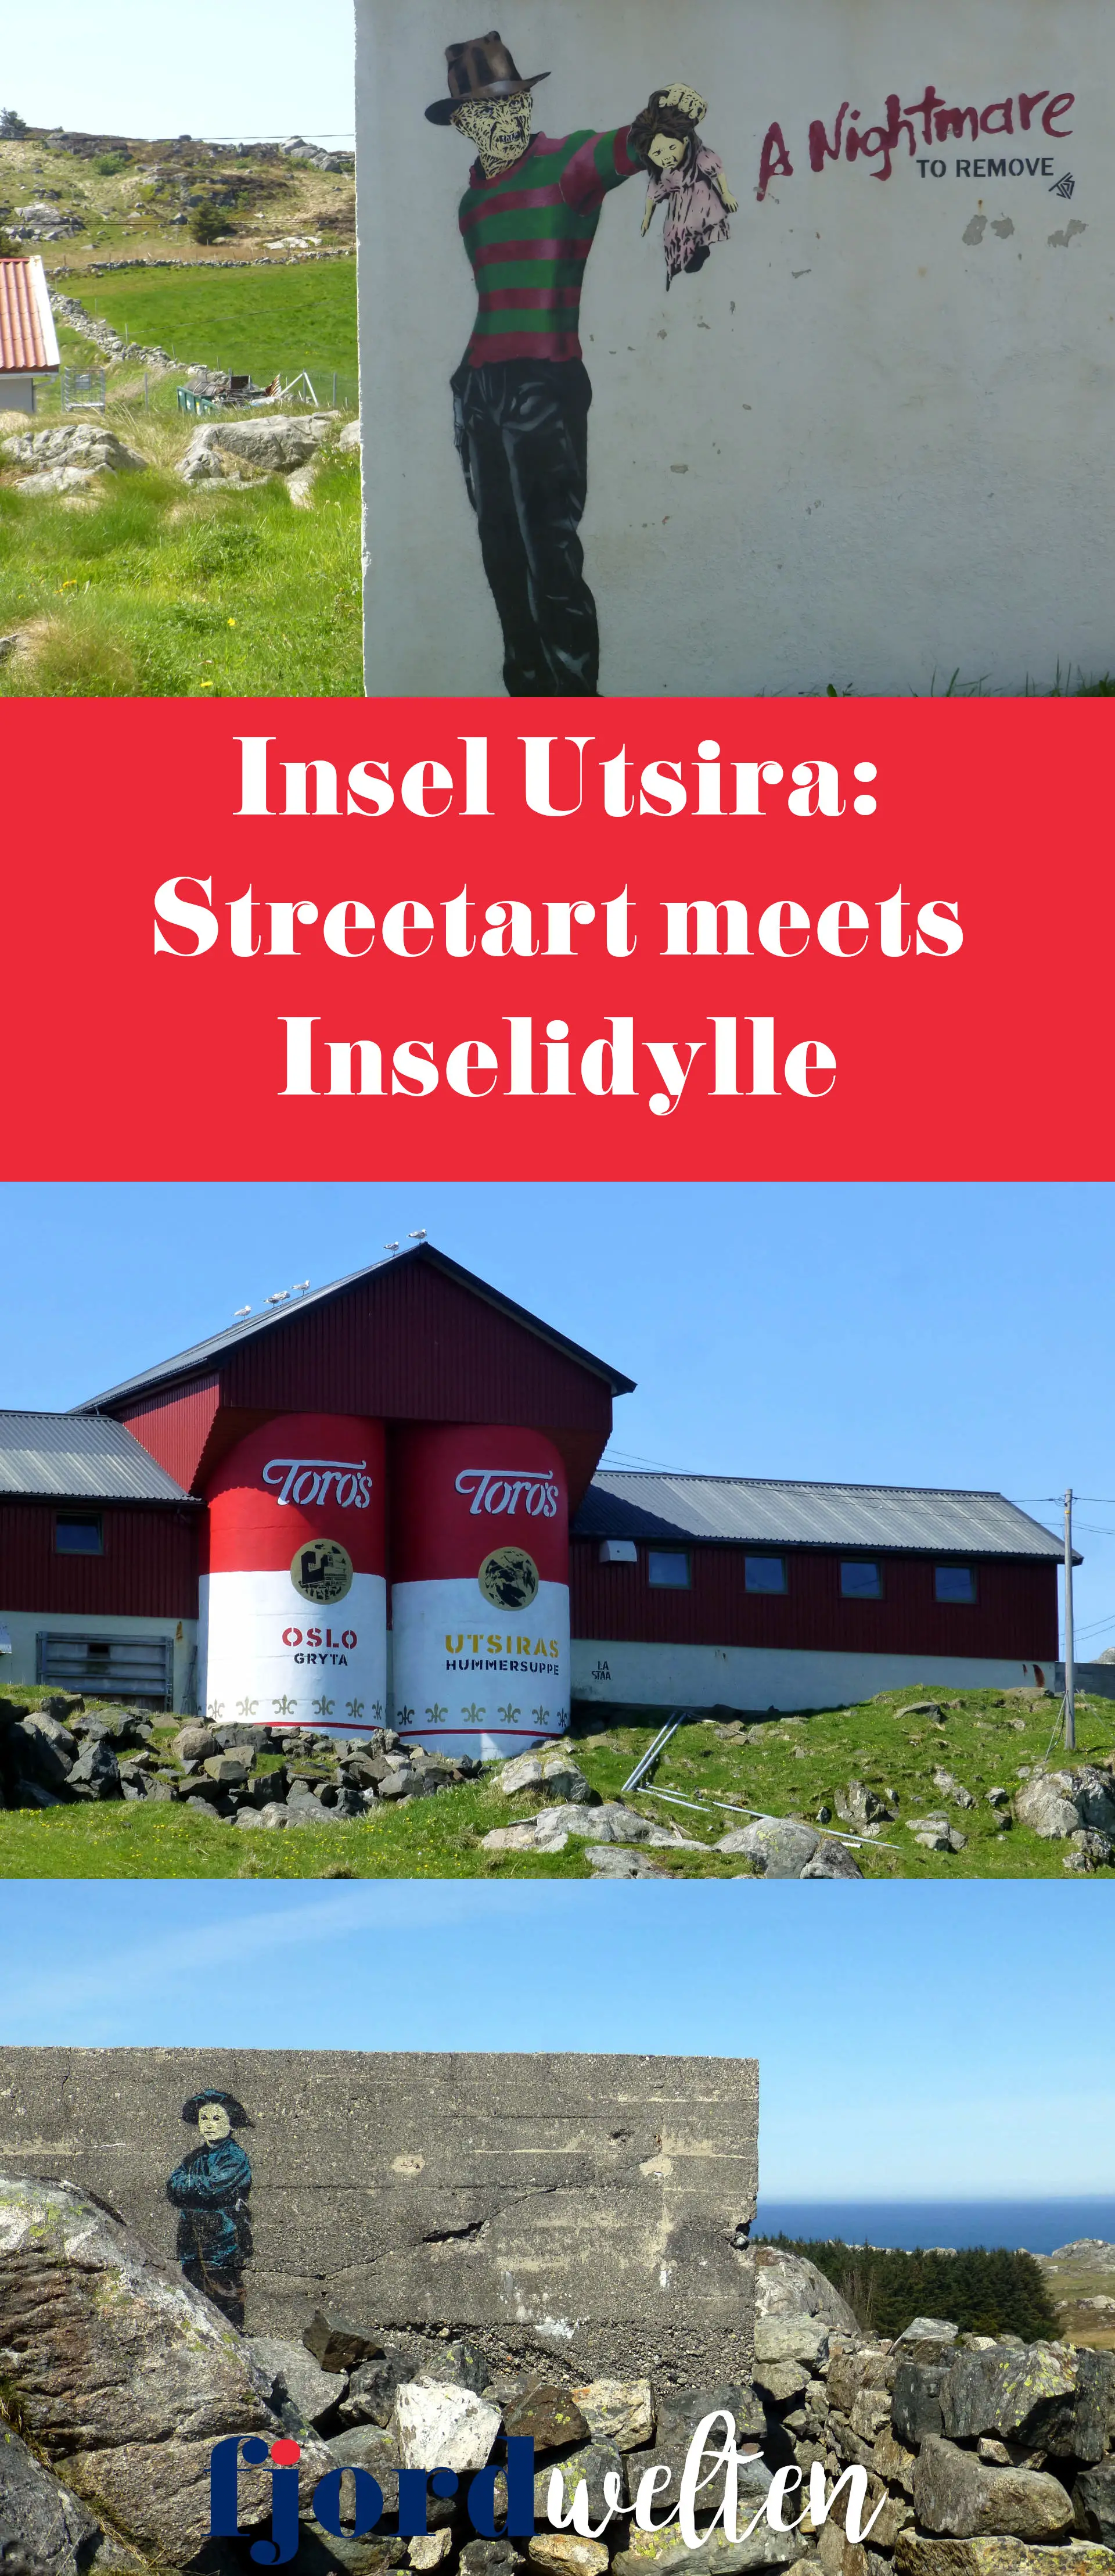 Utsira Streetart meets Inselidylle